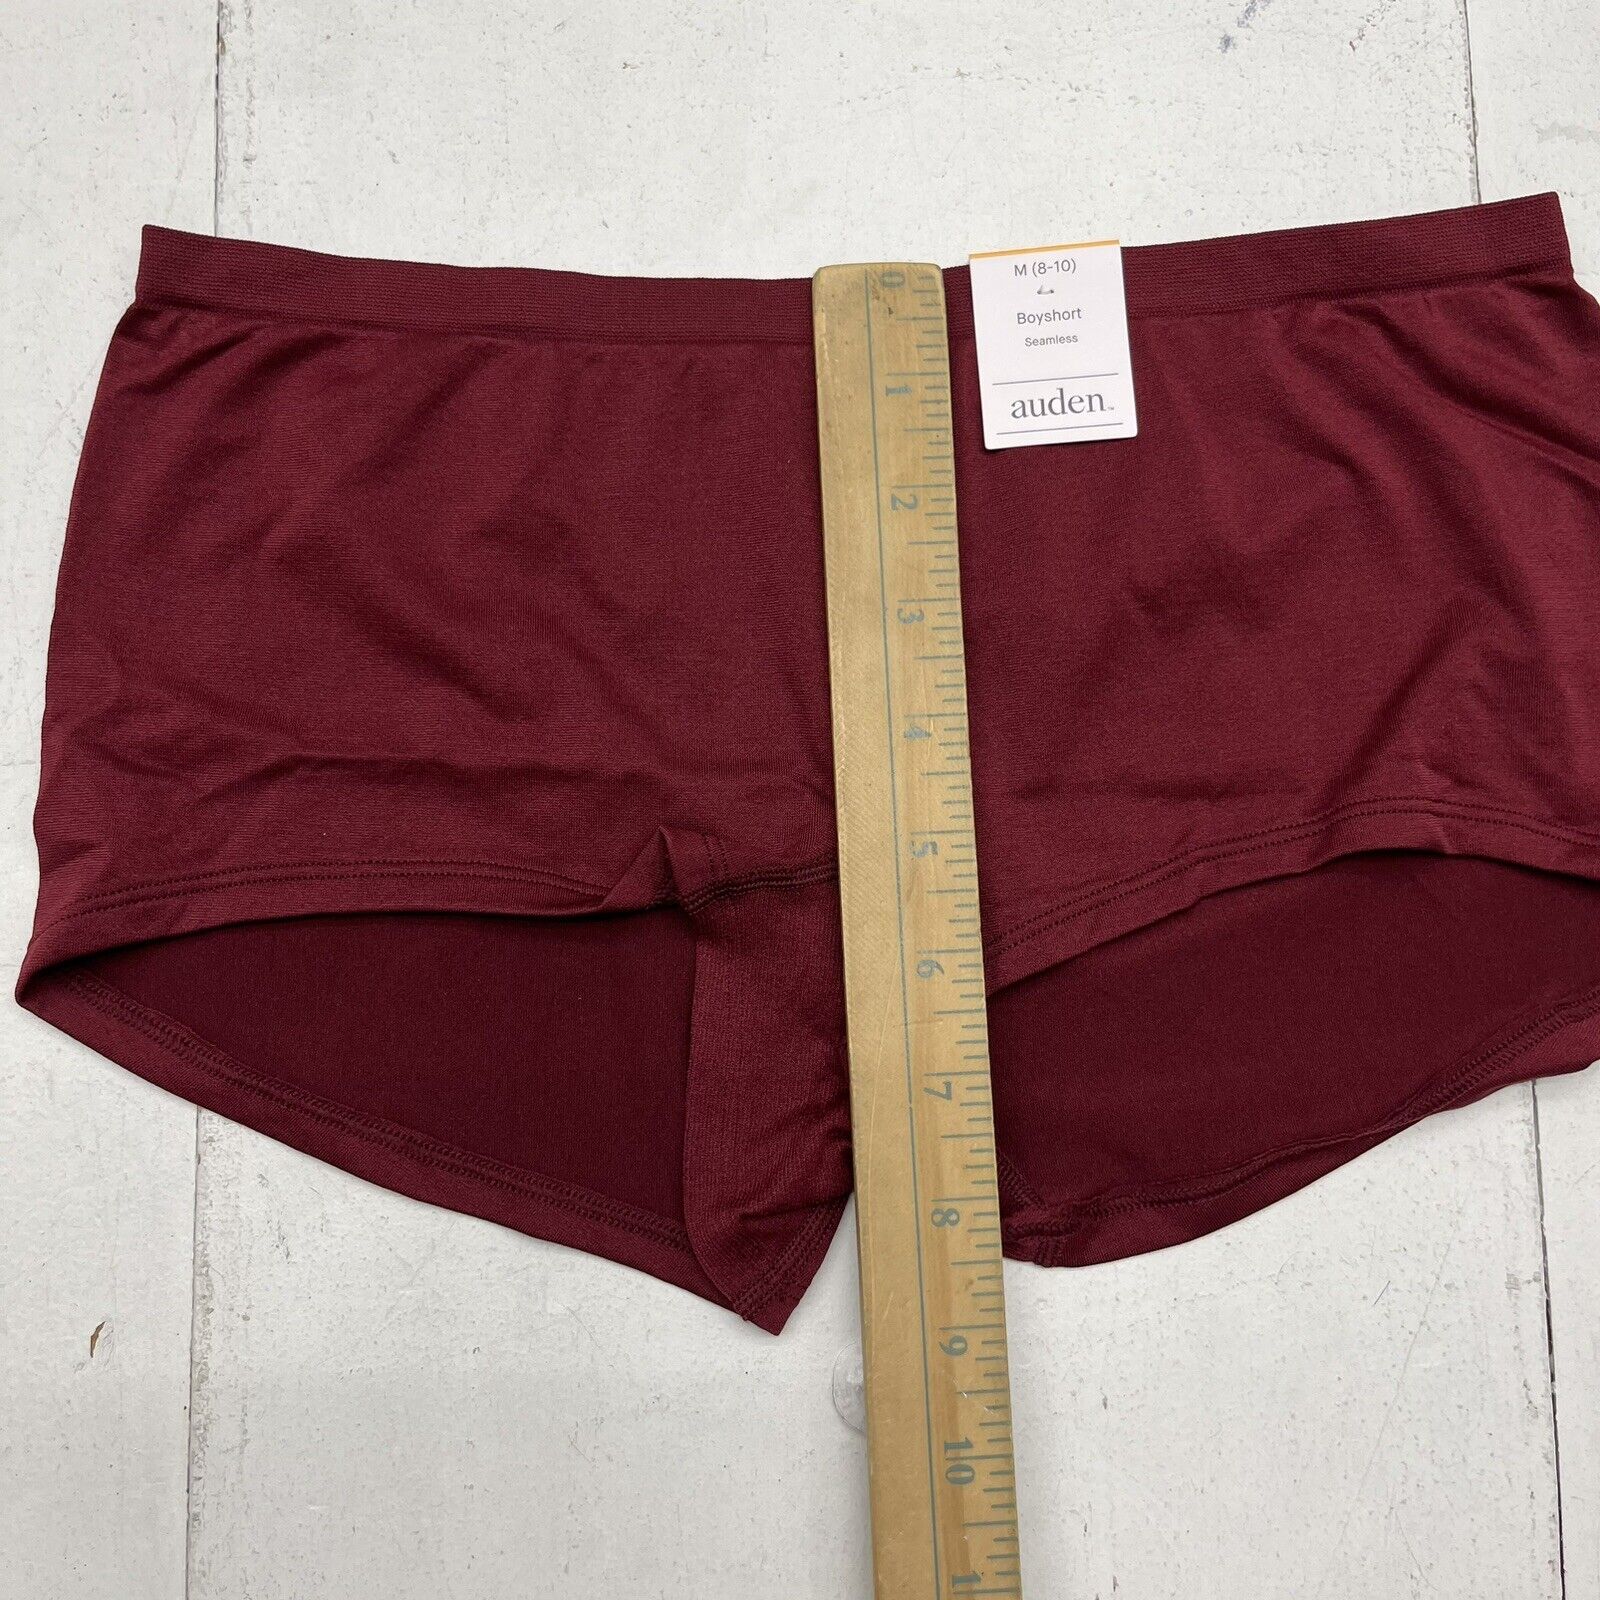 Auden Burgundy Seamless Boyshort Underwear Women's Size Medium NEW